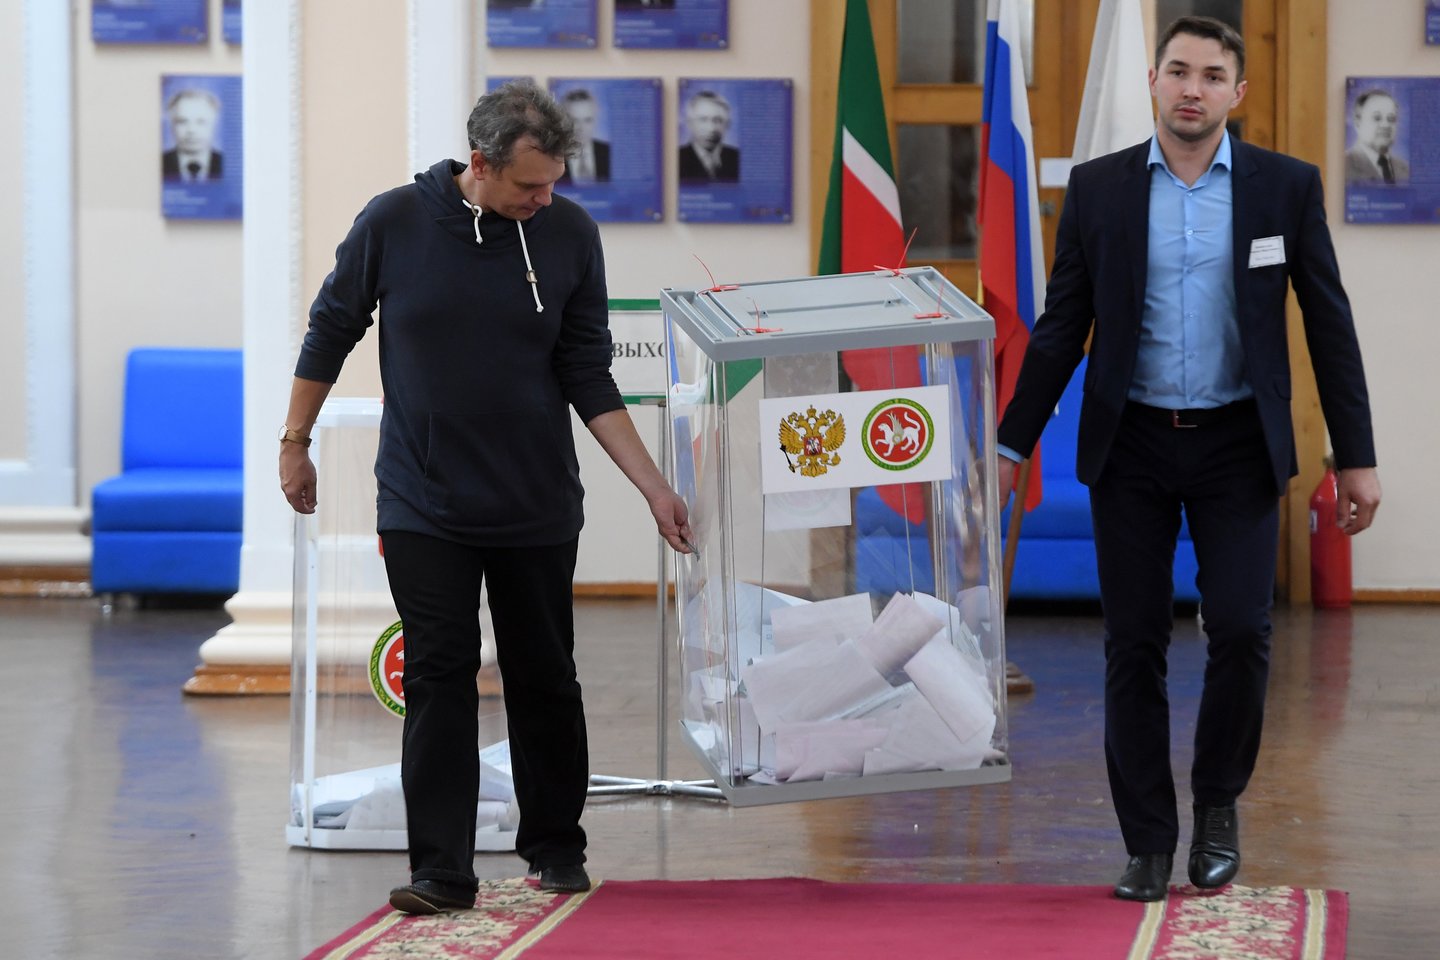 Rusijos valdančioji jėga patyrė nuostolių Maskvoje, bet gubernatorių rinkimuose pirmame ture laimėjo visi Kremliaus palaiminti kandidatai.<br>Sputnik/Scanpix nuotr.